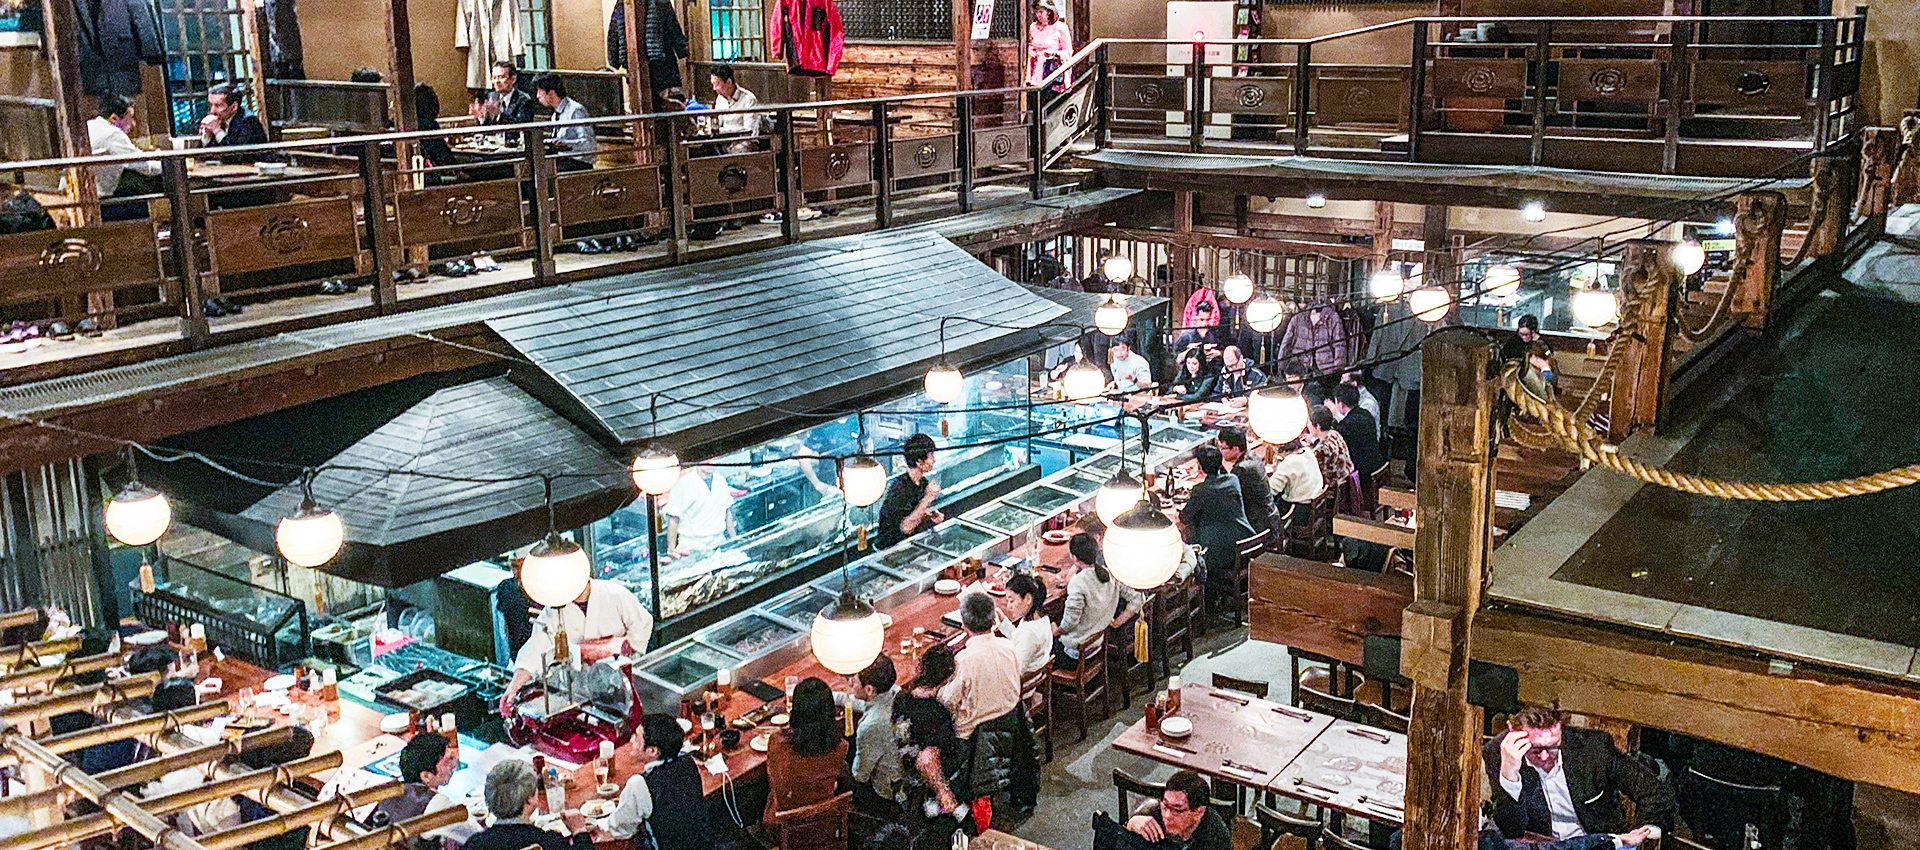 Gonpachi: The Kill Bill Restaurant in Tokyo – Appetite For Japan